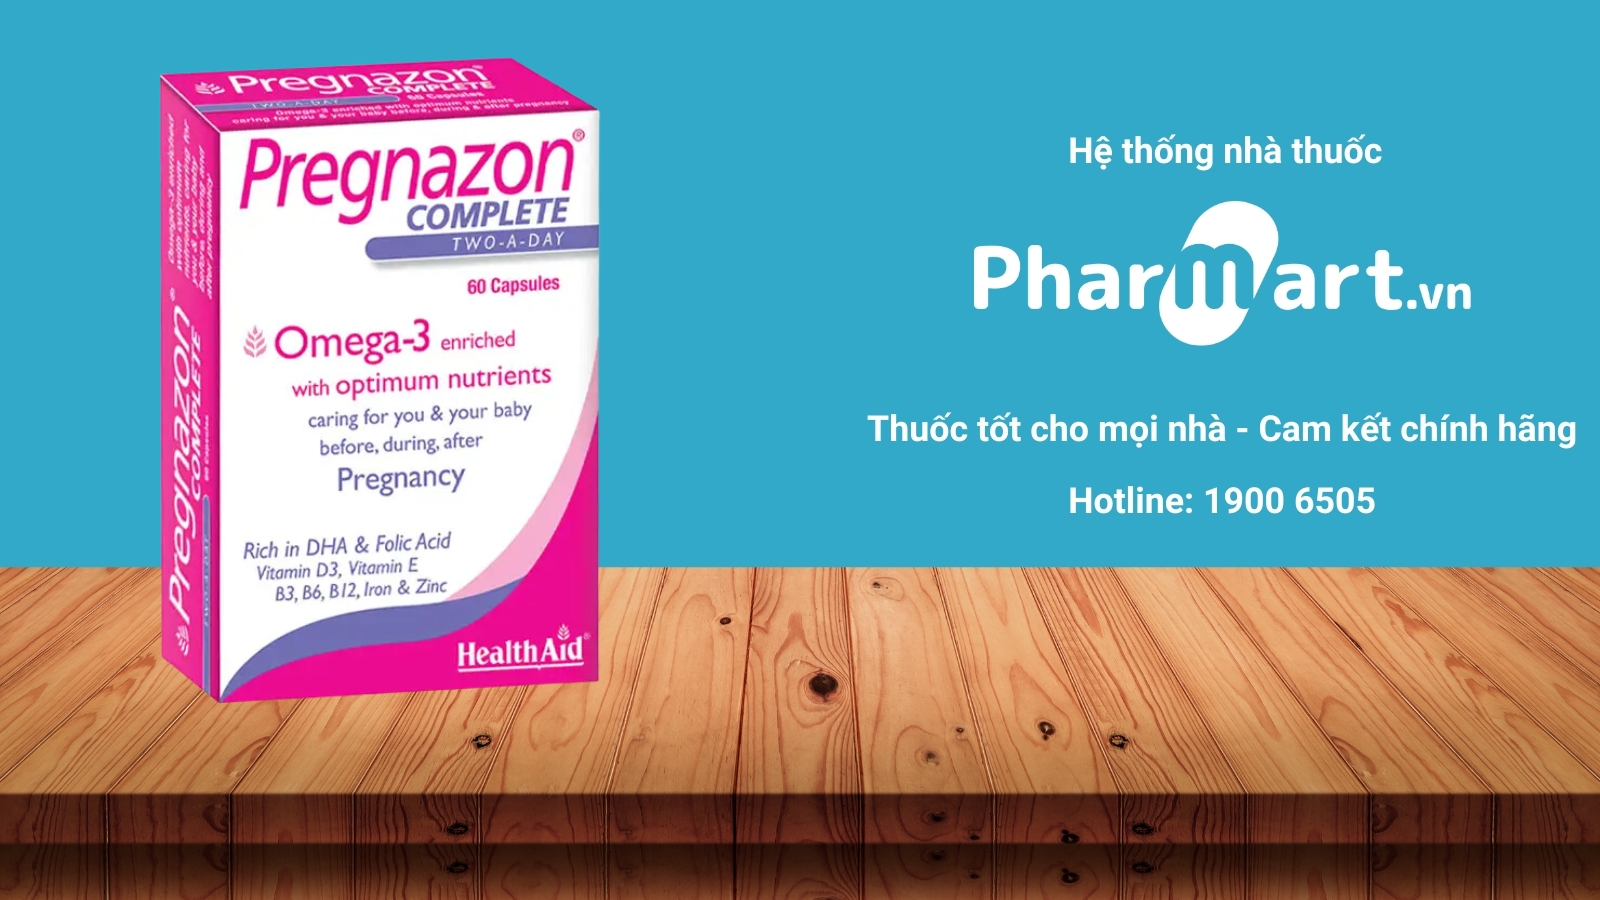 Mua ngay Health Aid Pregnazon chính hãng tại Pharmart.vn